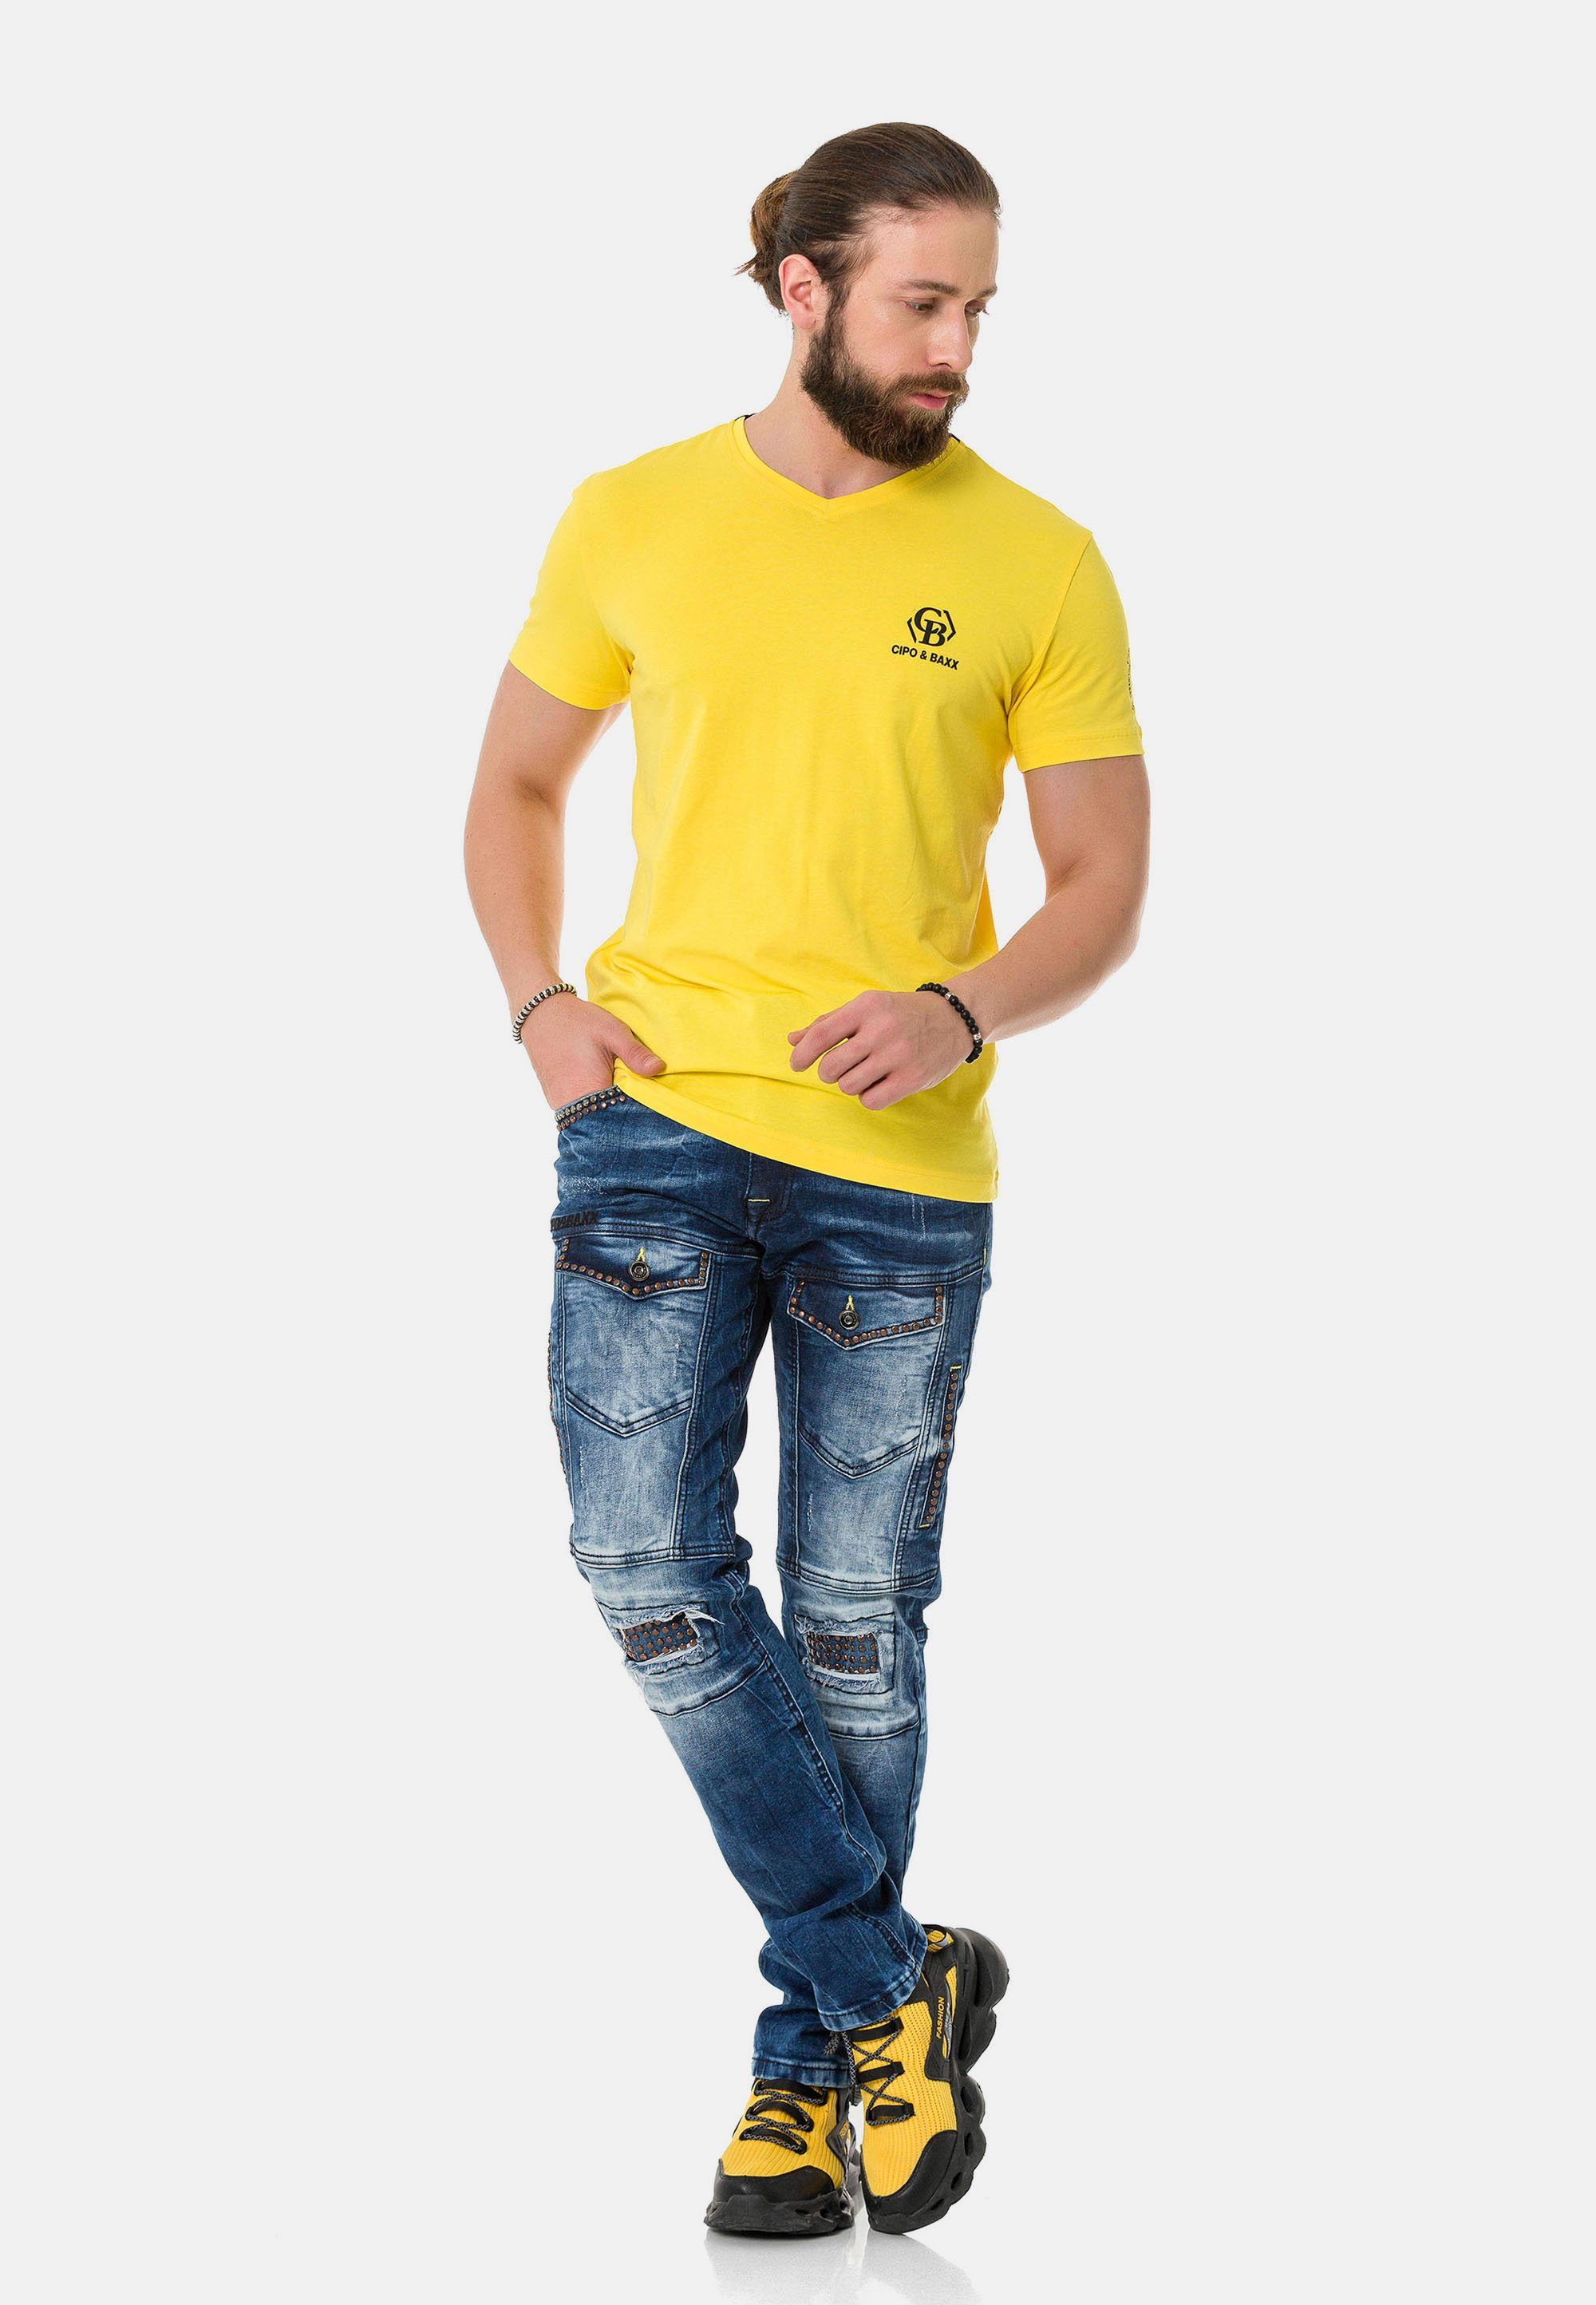 Cipo Markenlogos mit T-Shirt dezenten gelb & Baxx